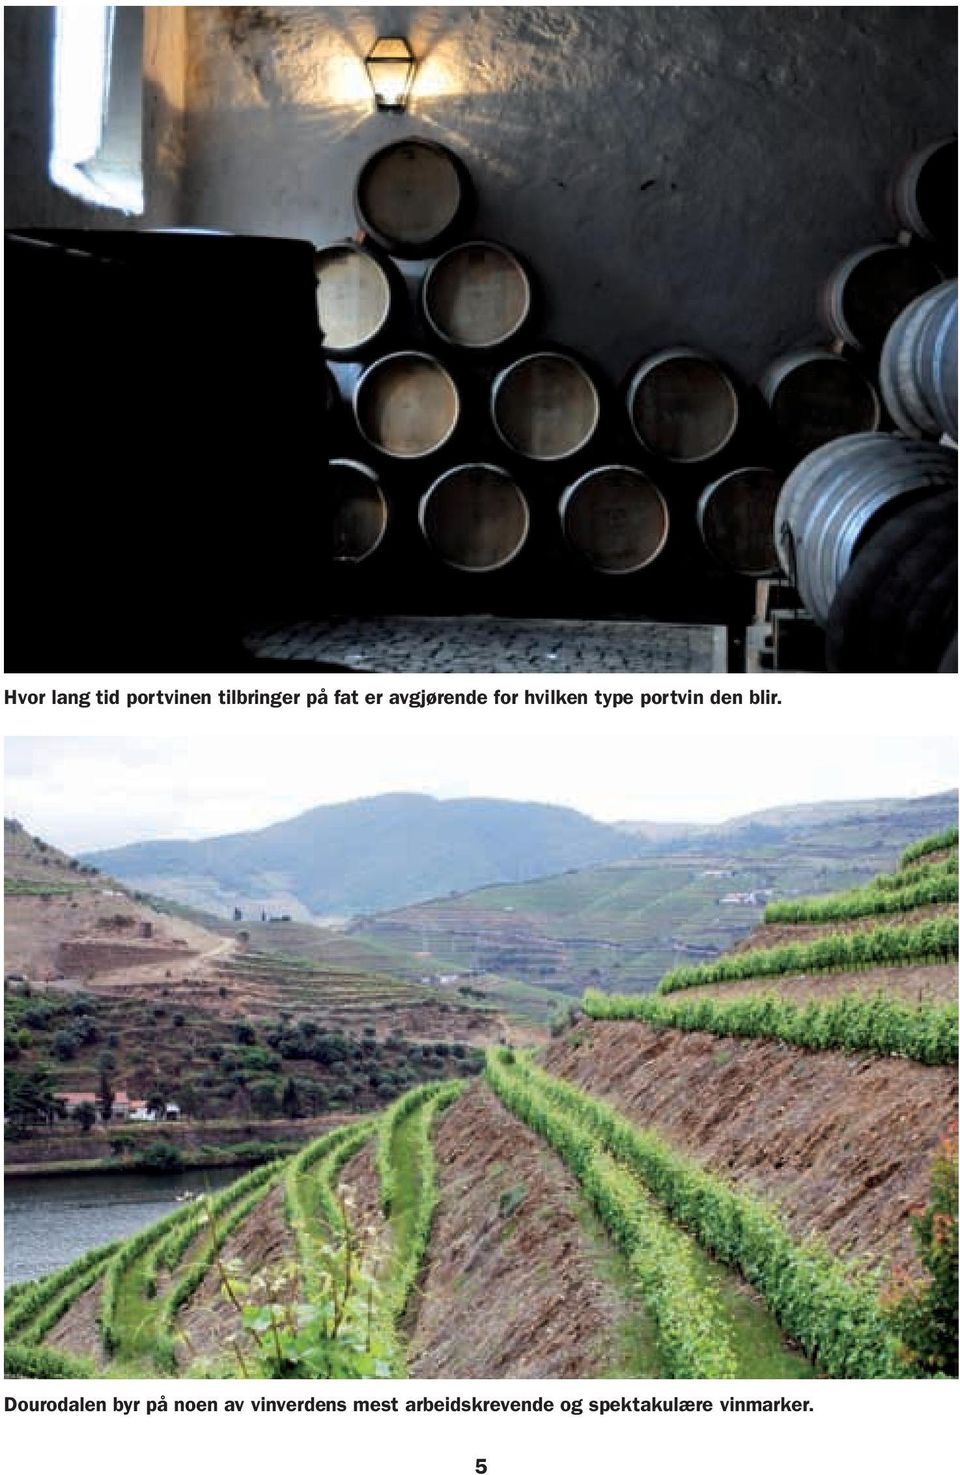 Dourodalen byr på noen av vinverdens mest